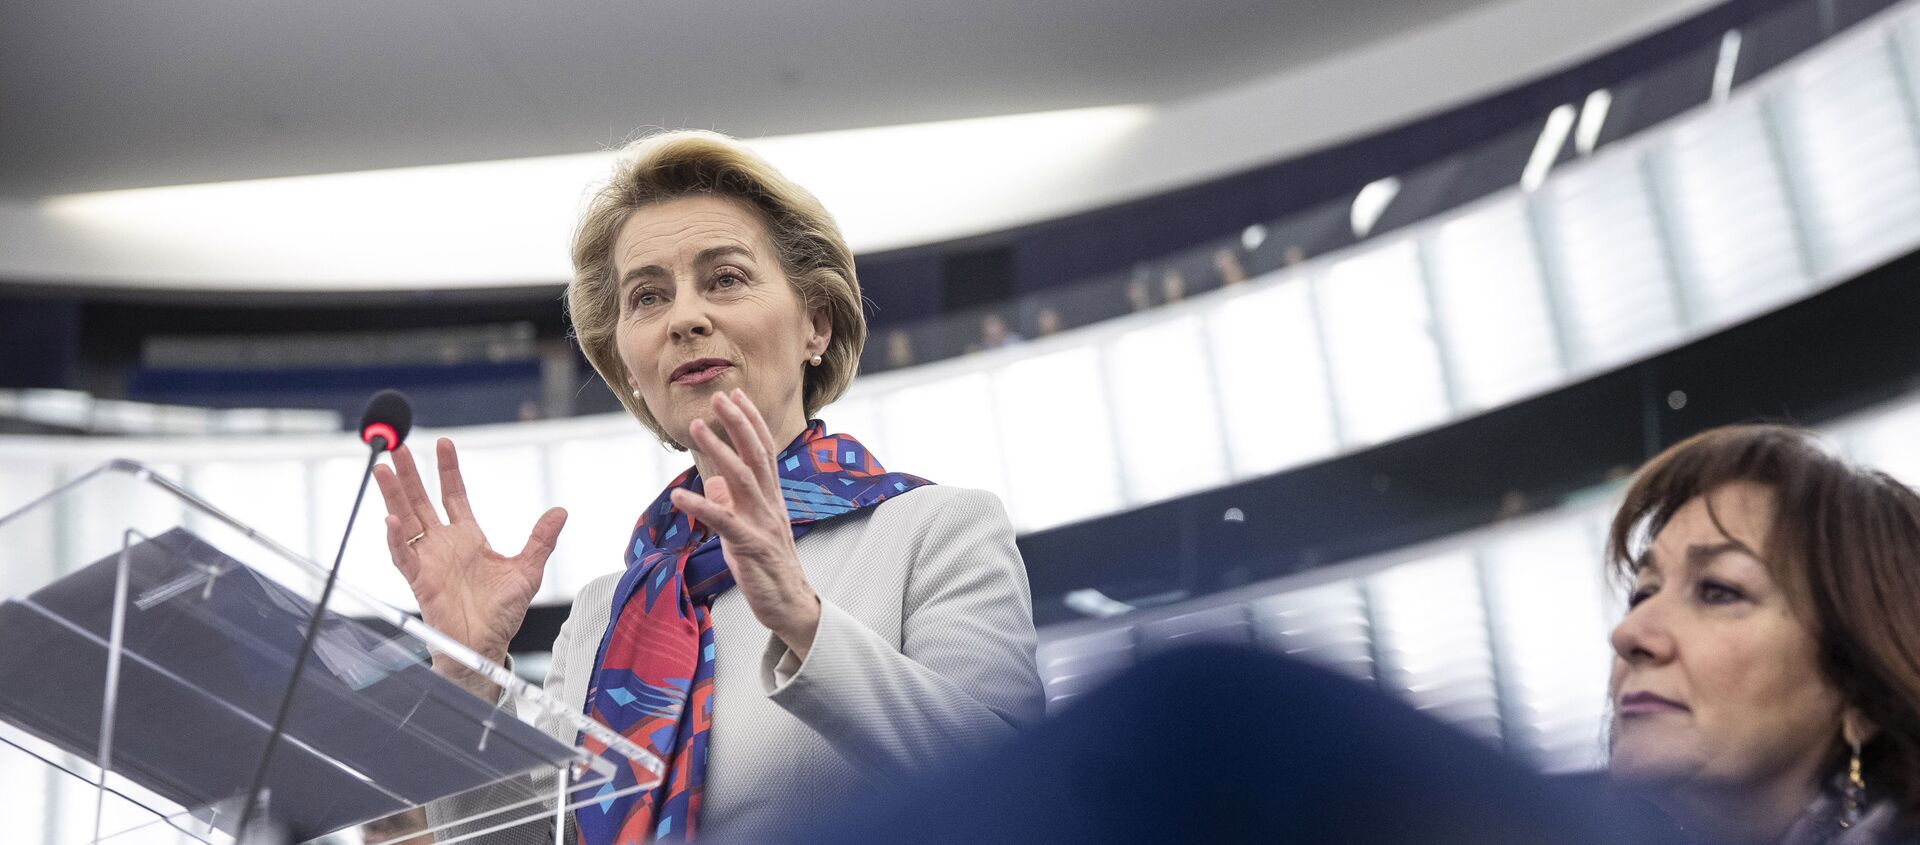 European Commission President Ursula von der Leyen delivers her speech at the European parliament Tuesday, Jan.14, 2020 in Strasbourg, eastern France. - Sputnik International, 1920, 09.12.2020